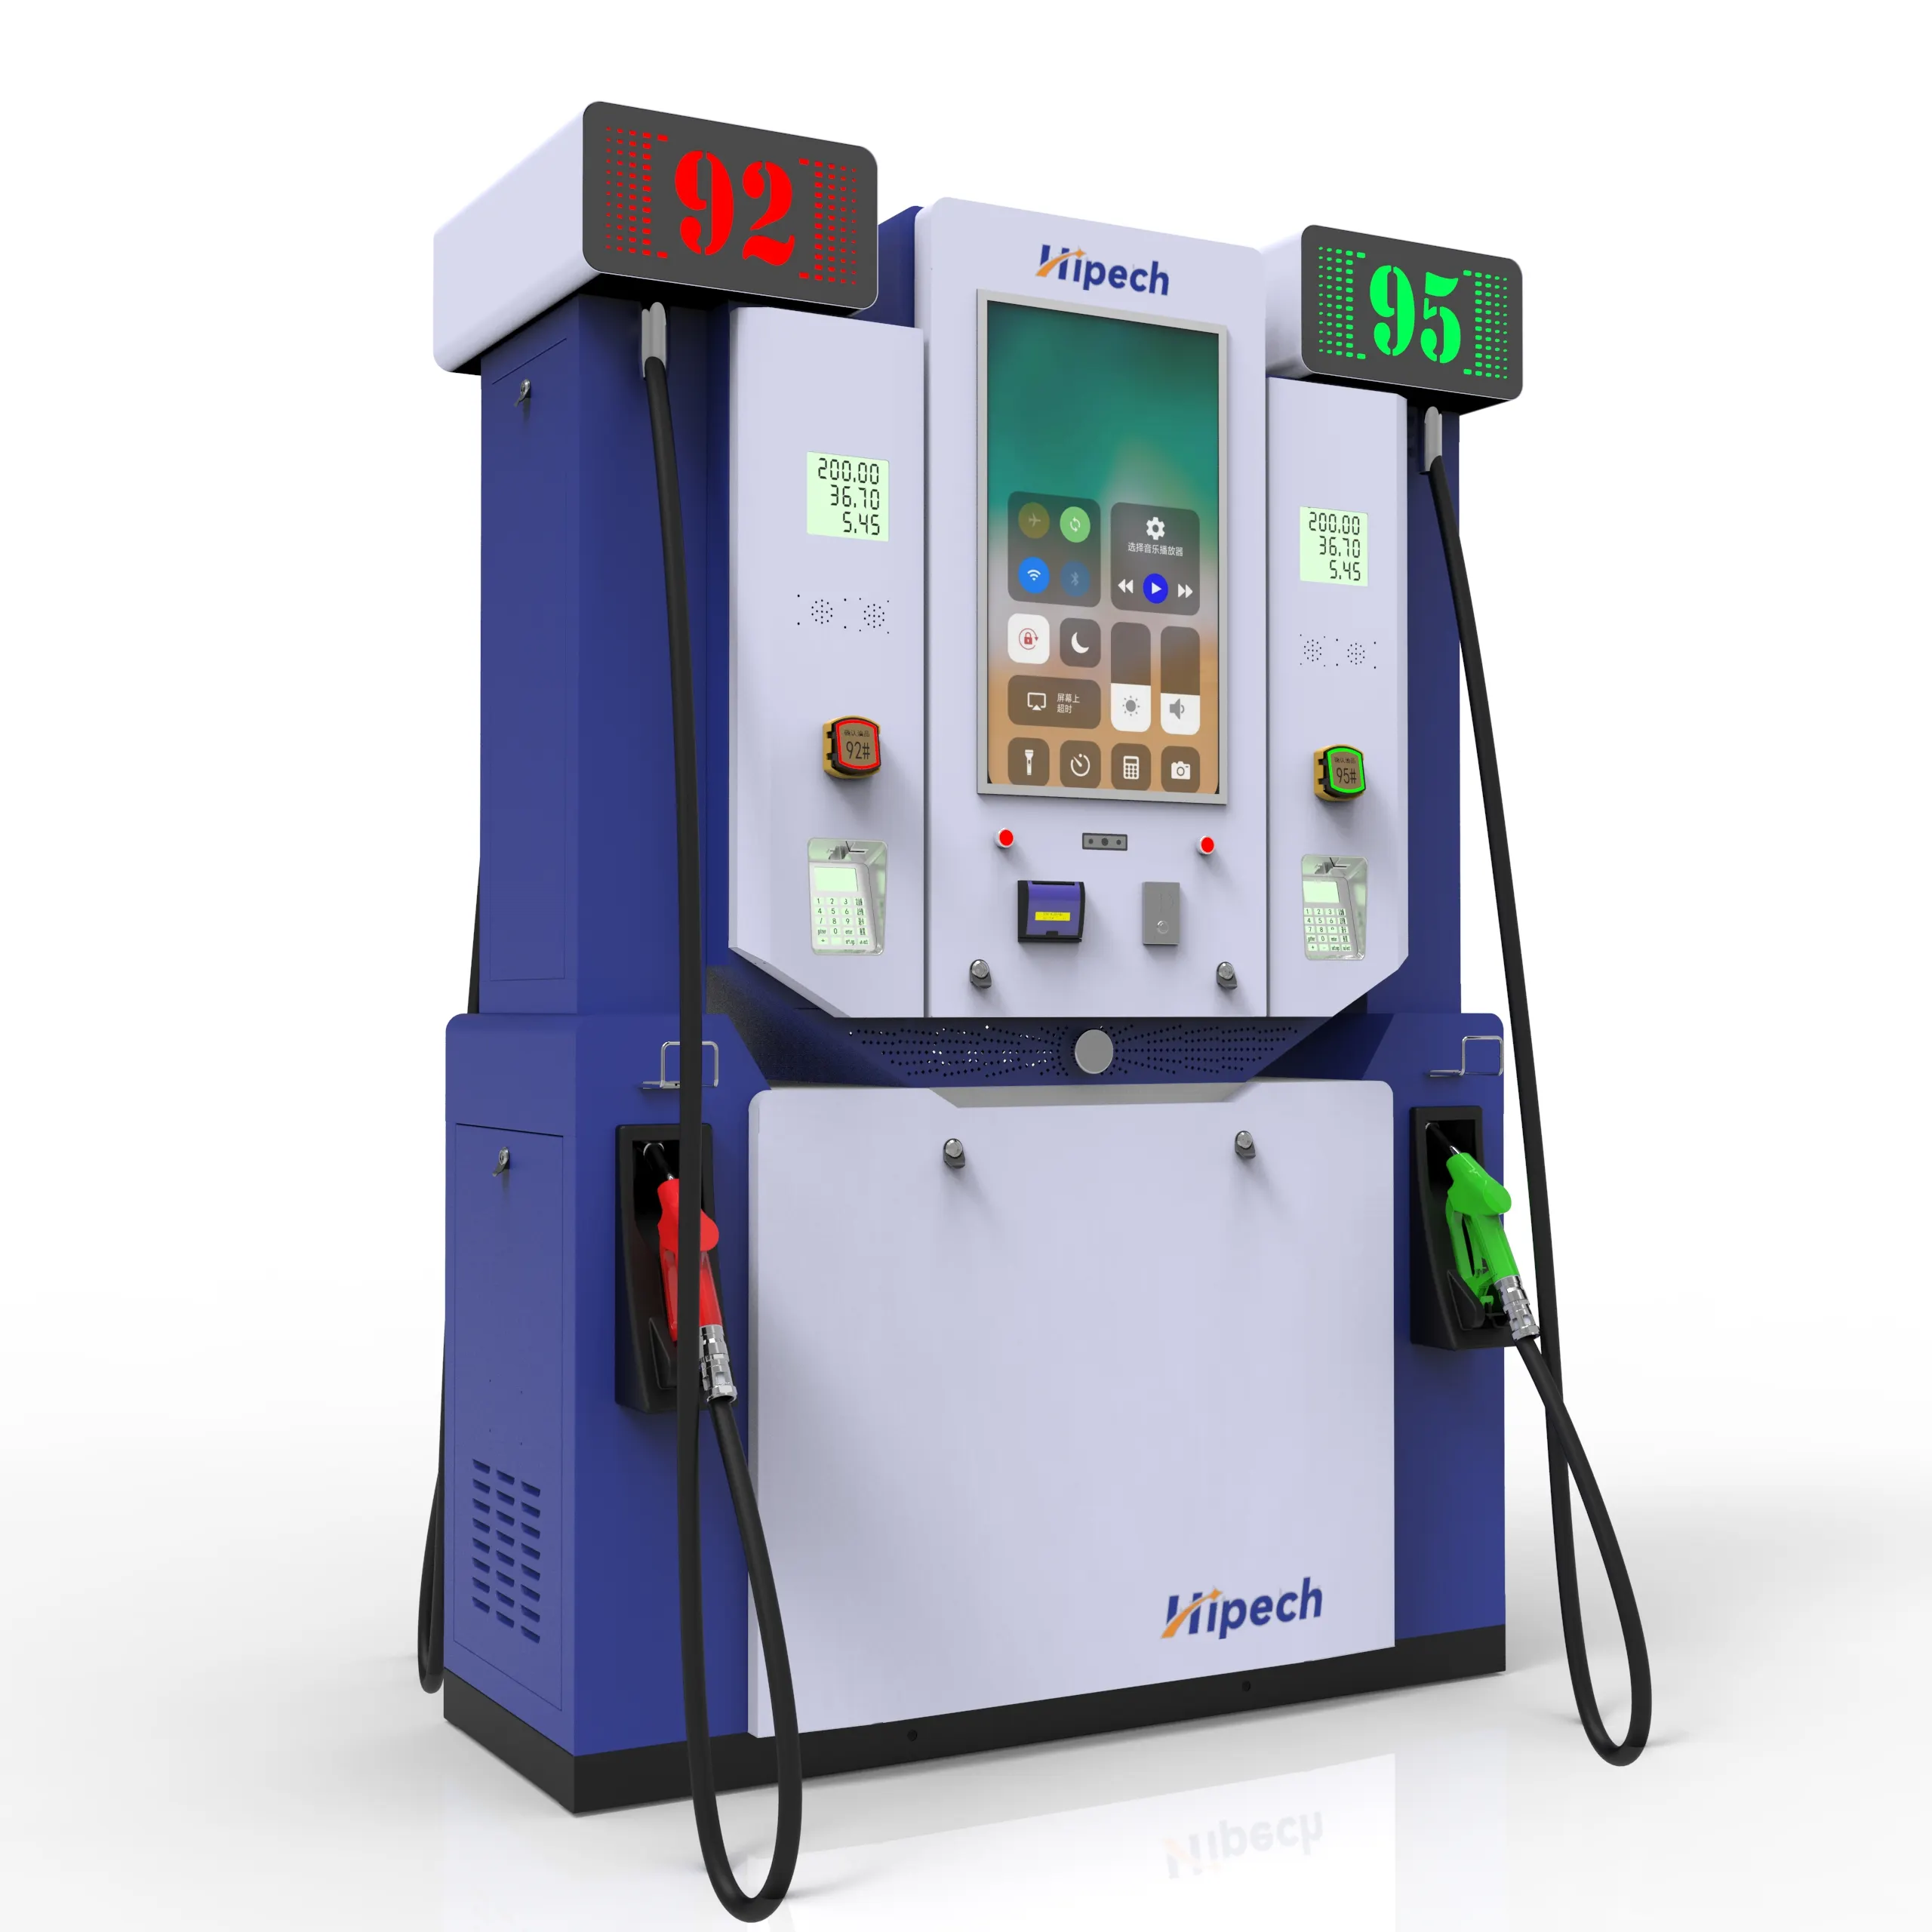 China Benzin Service Gas ausrüstung Elektronische Ölpumpe Benzin Kraftstoff düse Pistole Pumpe Benzinsp ender